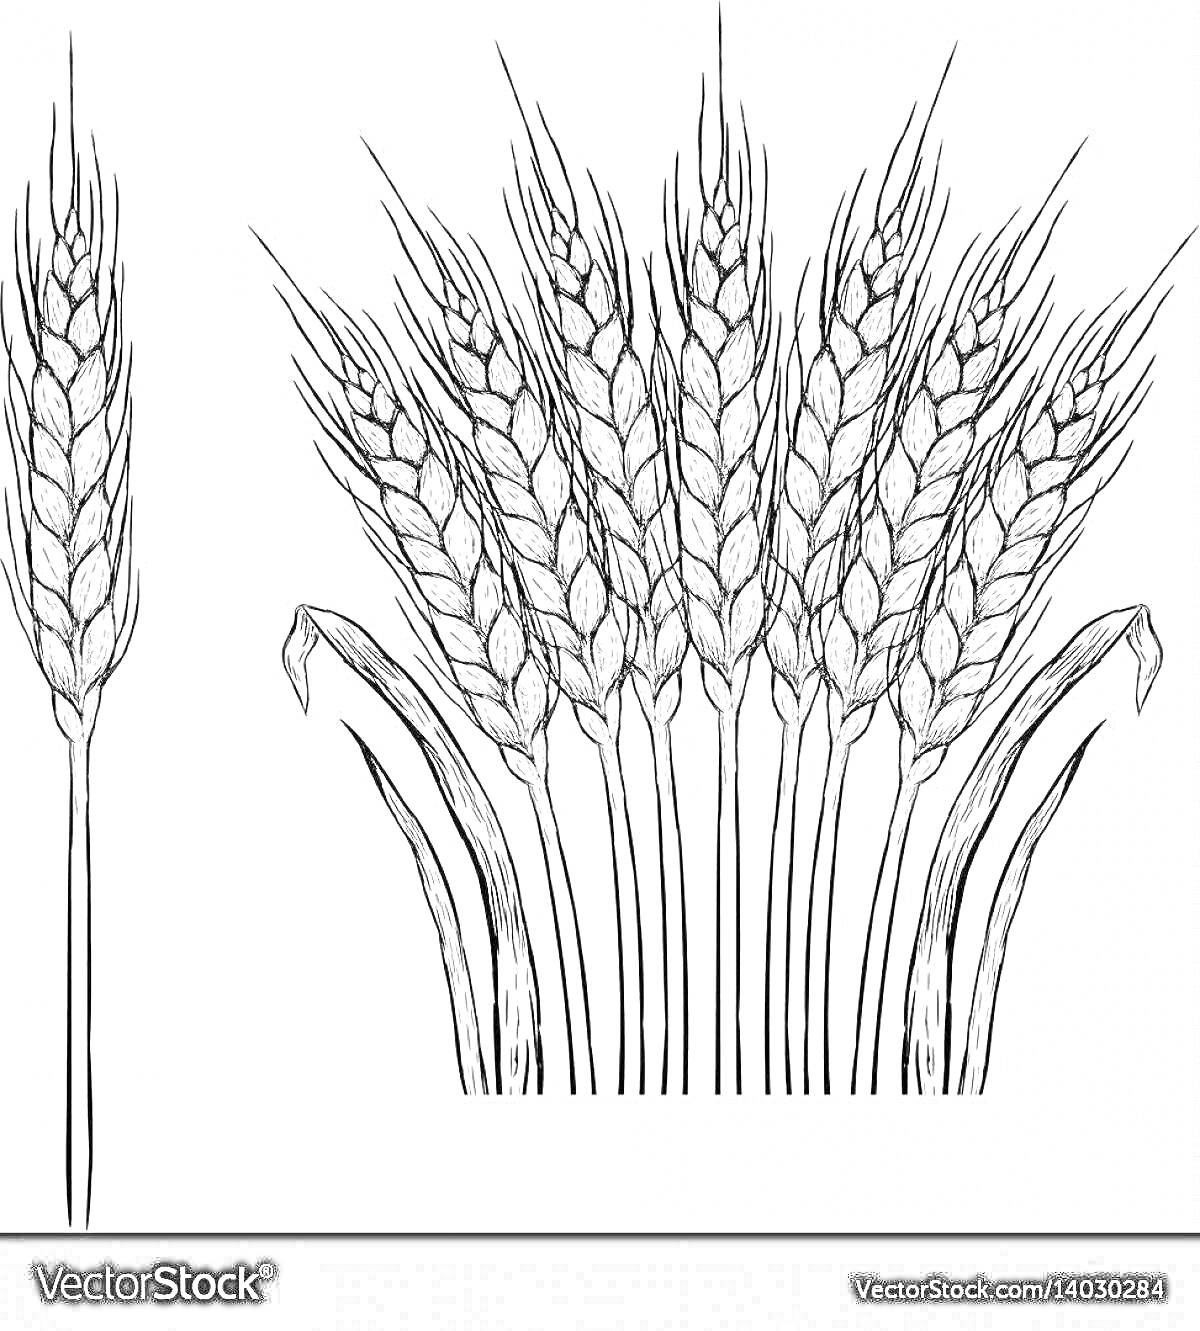 Раскраска Колосок пшеницы, одиночный колосок и пучок колосков